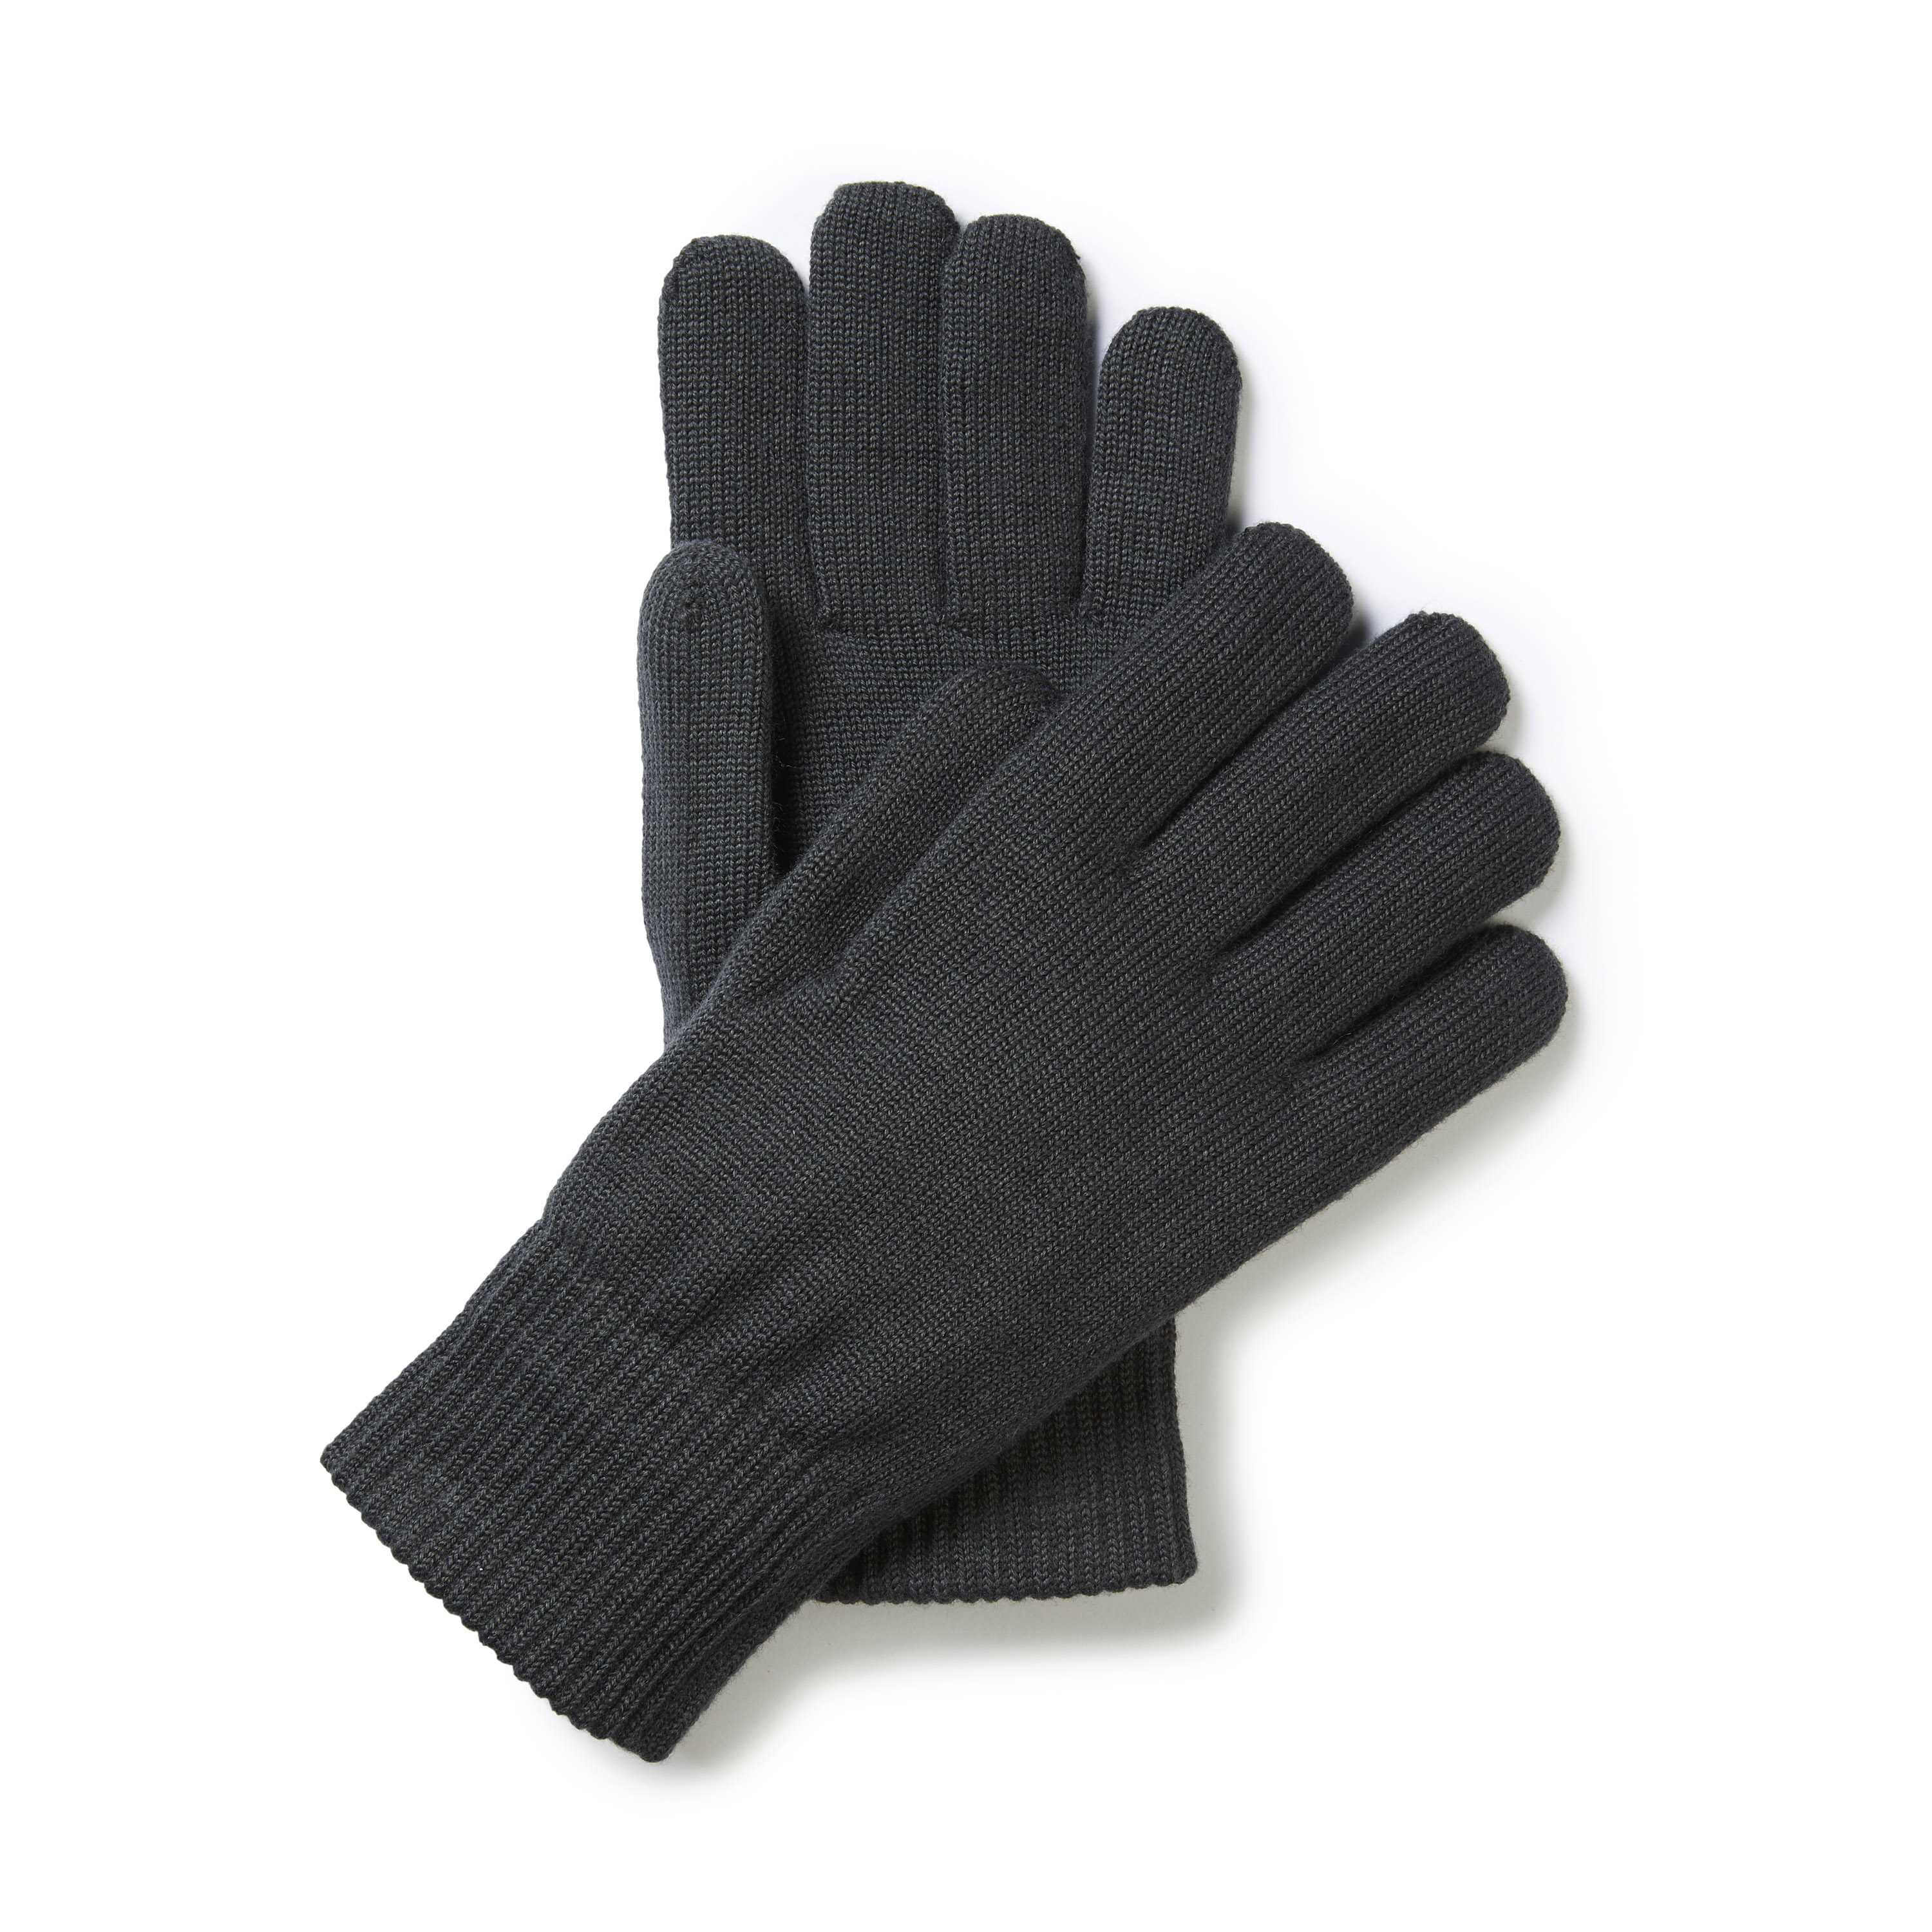 Rohan Faroe Gloves